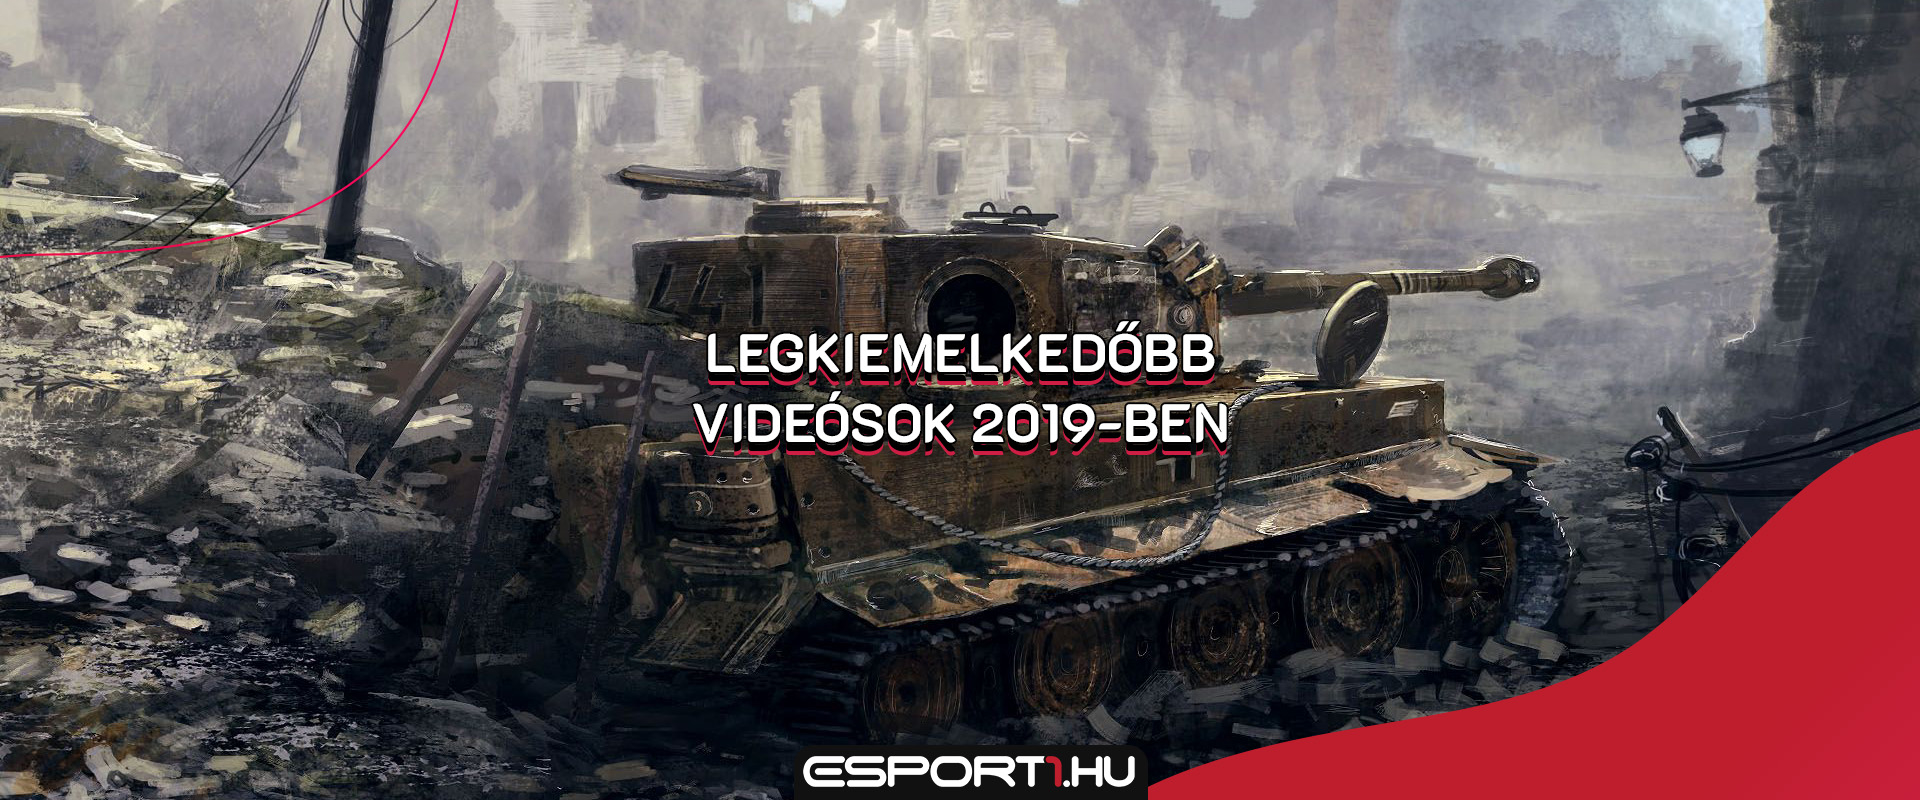 A legkiemelkedőbb magyar World of Tanks videósok 2019-ben